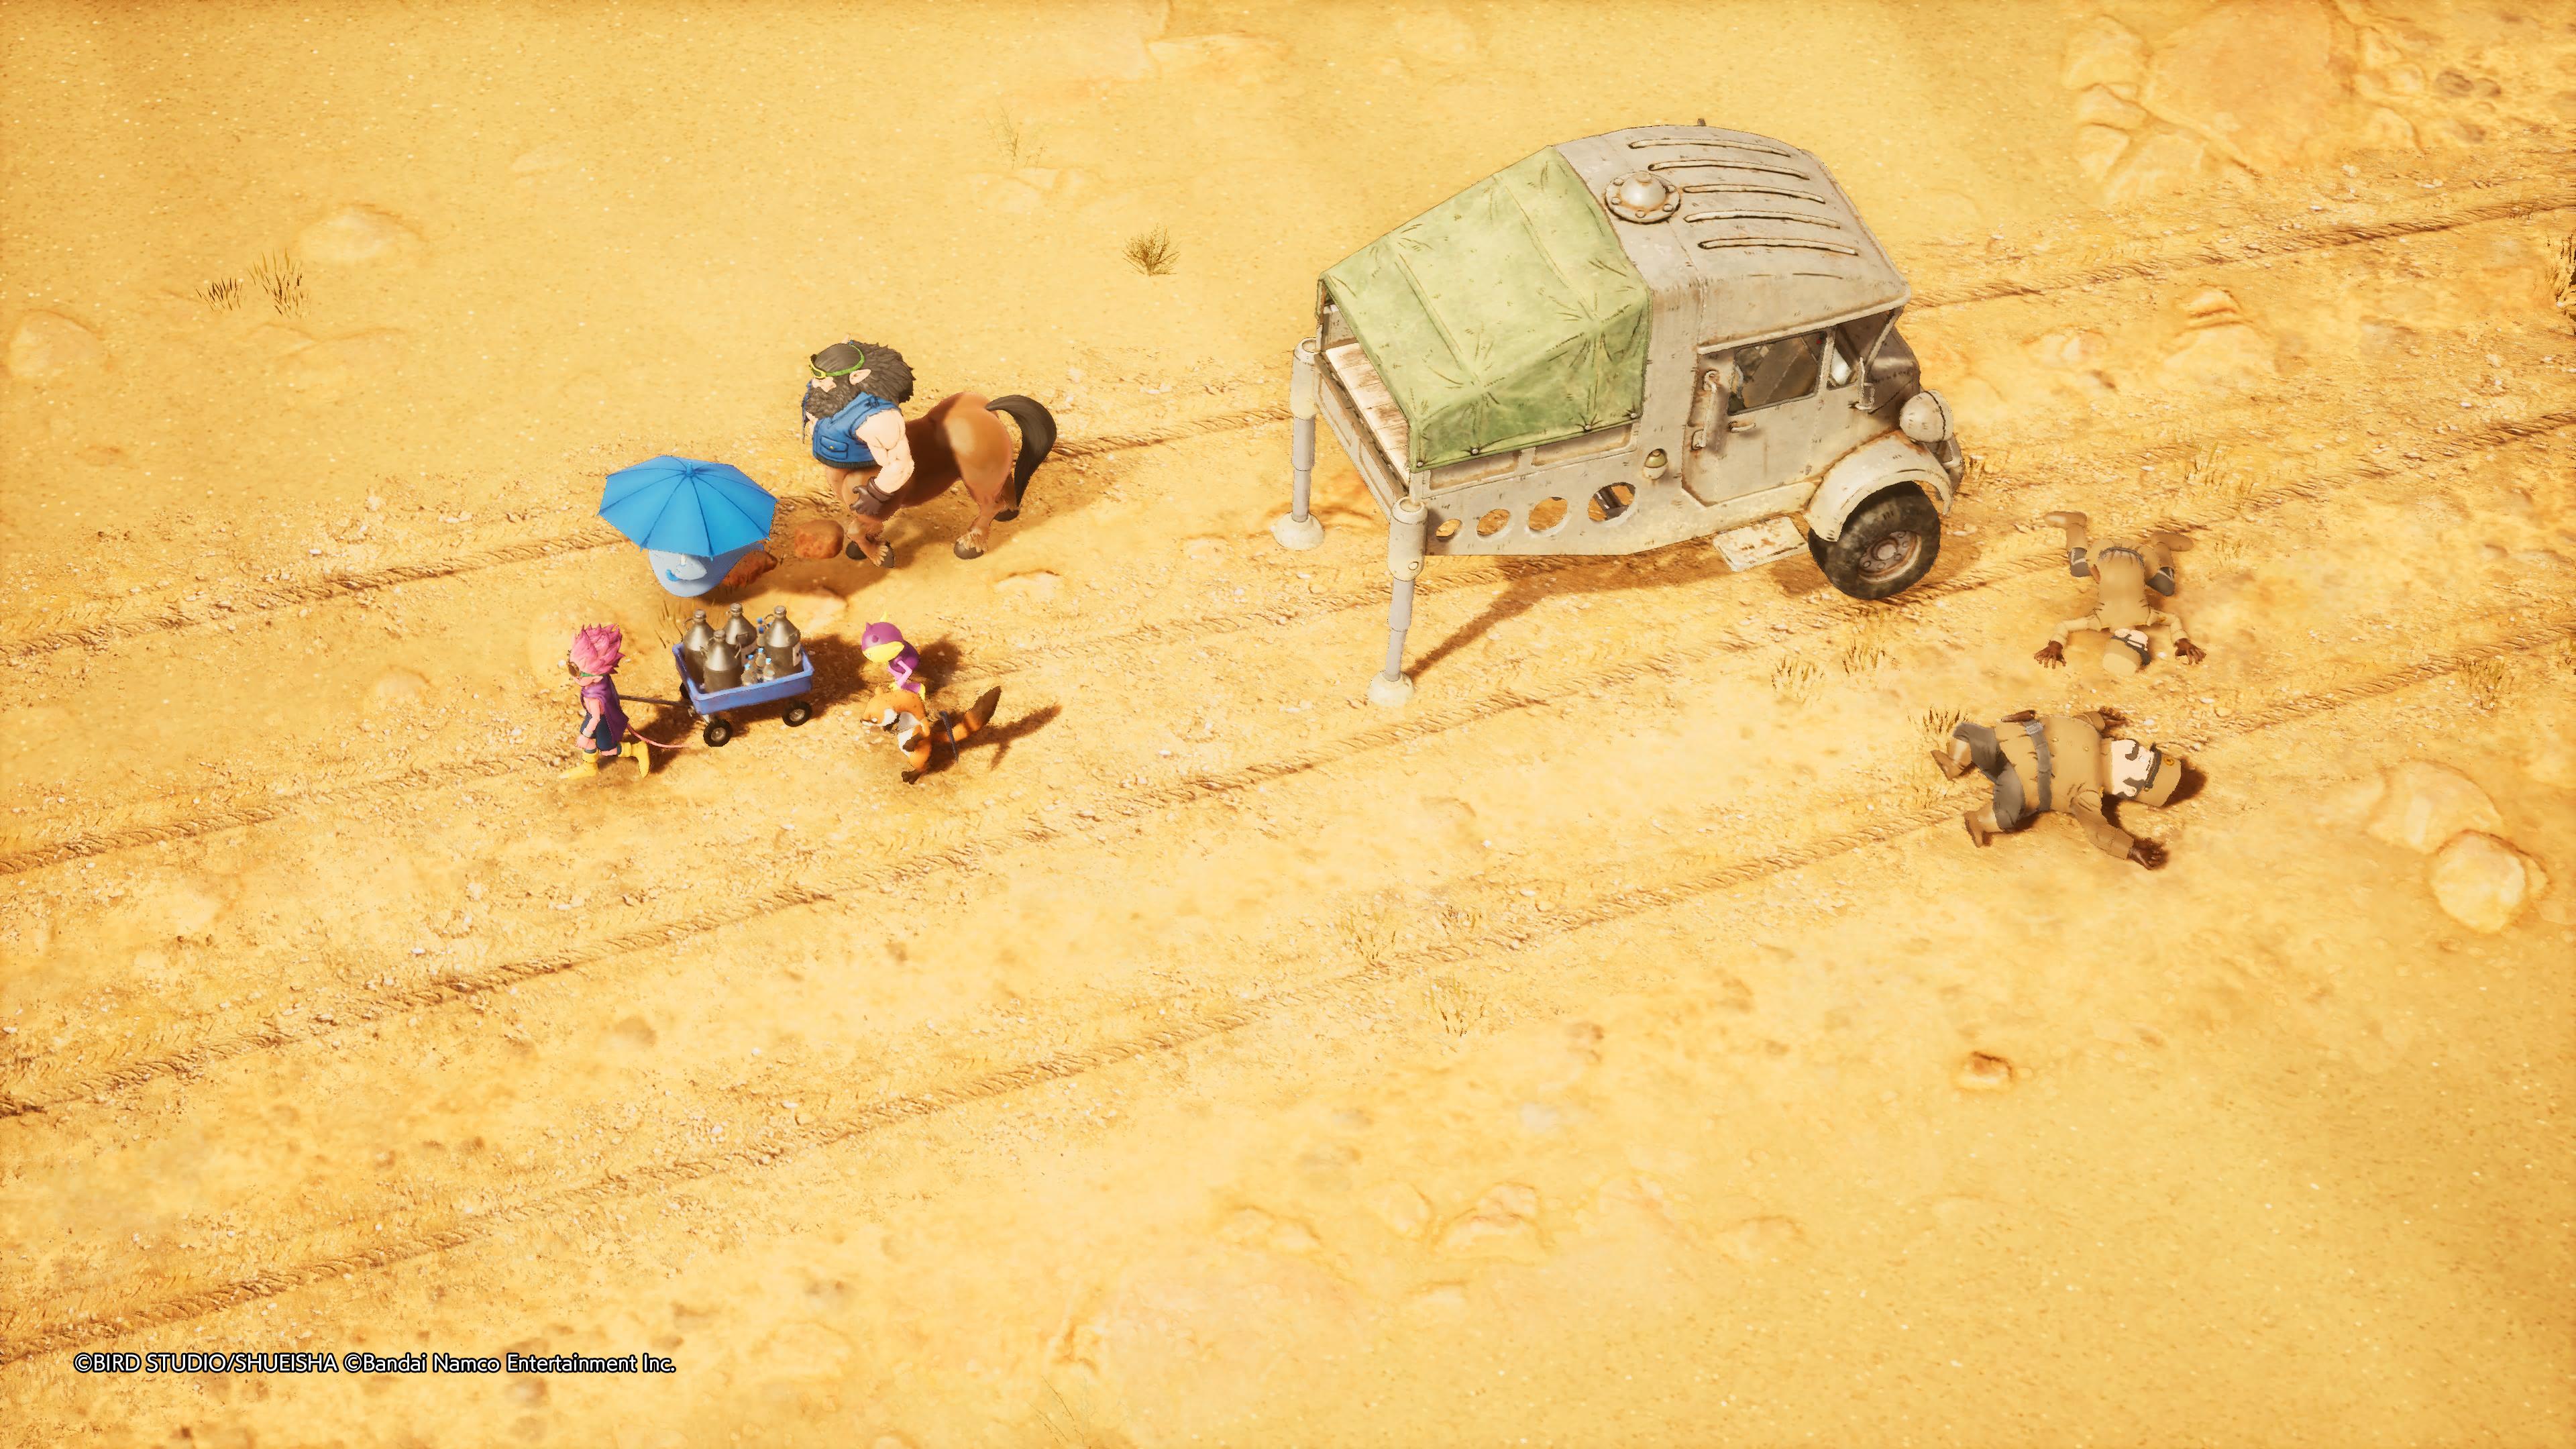 Reseña: Sand Land, una fiel adaptación de la obra de Akira Toriyama 34